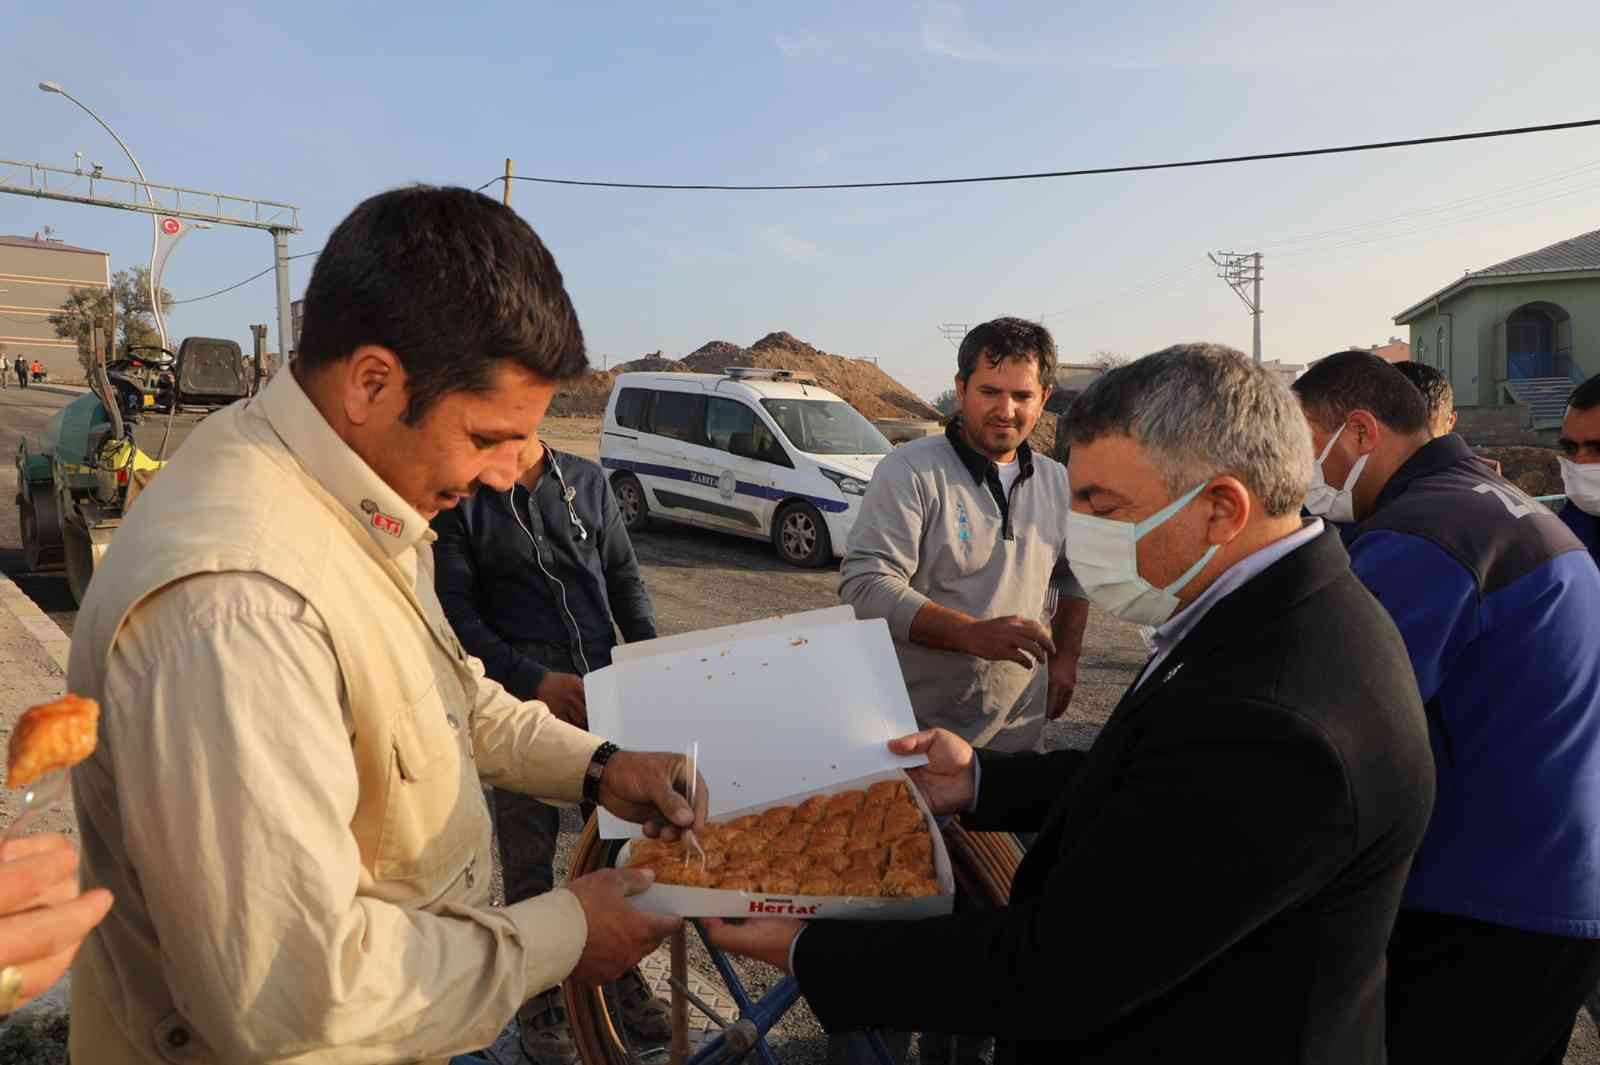 Başkan Şayir’den sahada çalışan personellere tatlı ikramı #kocaeli